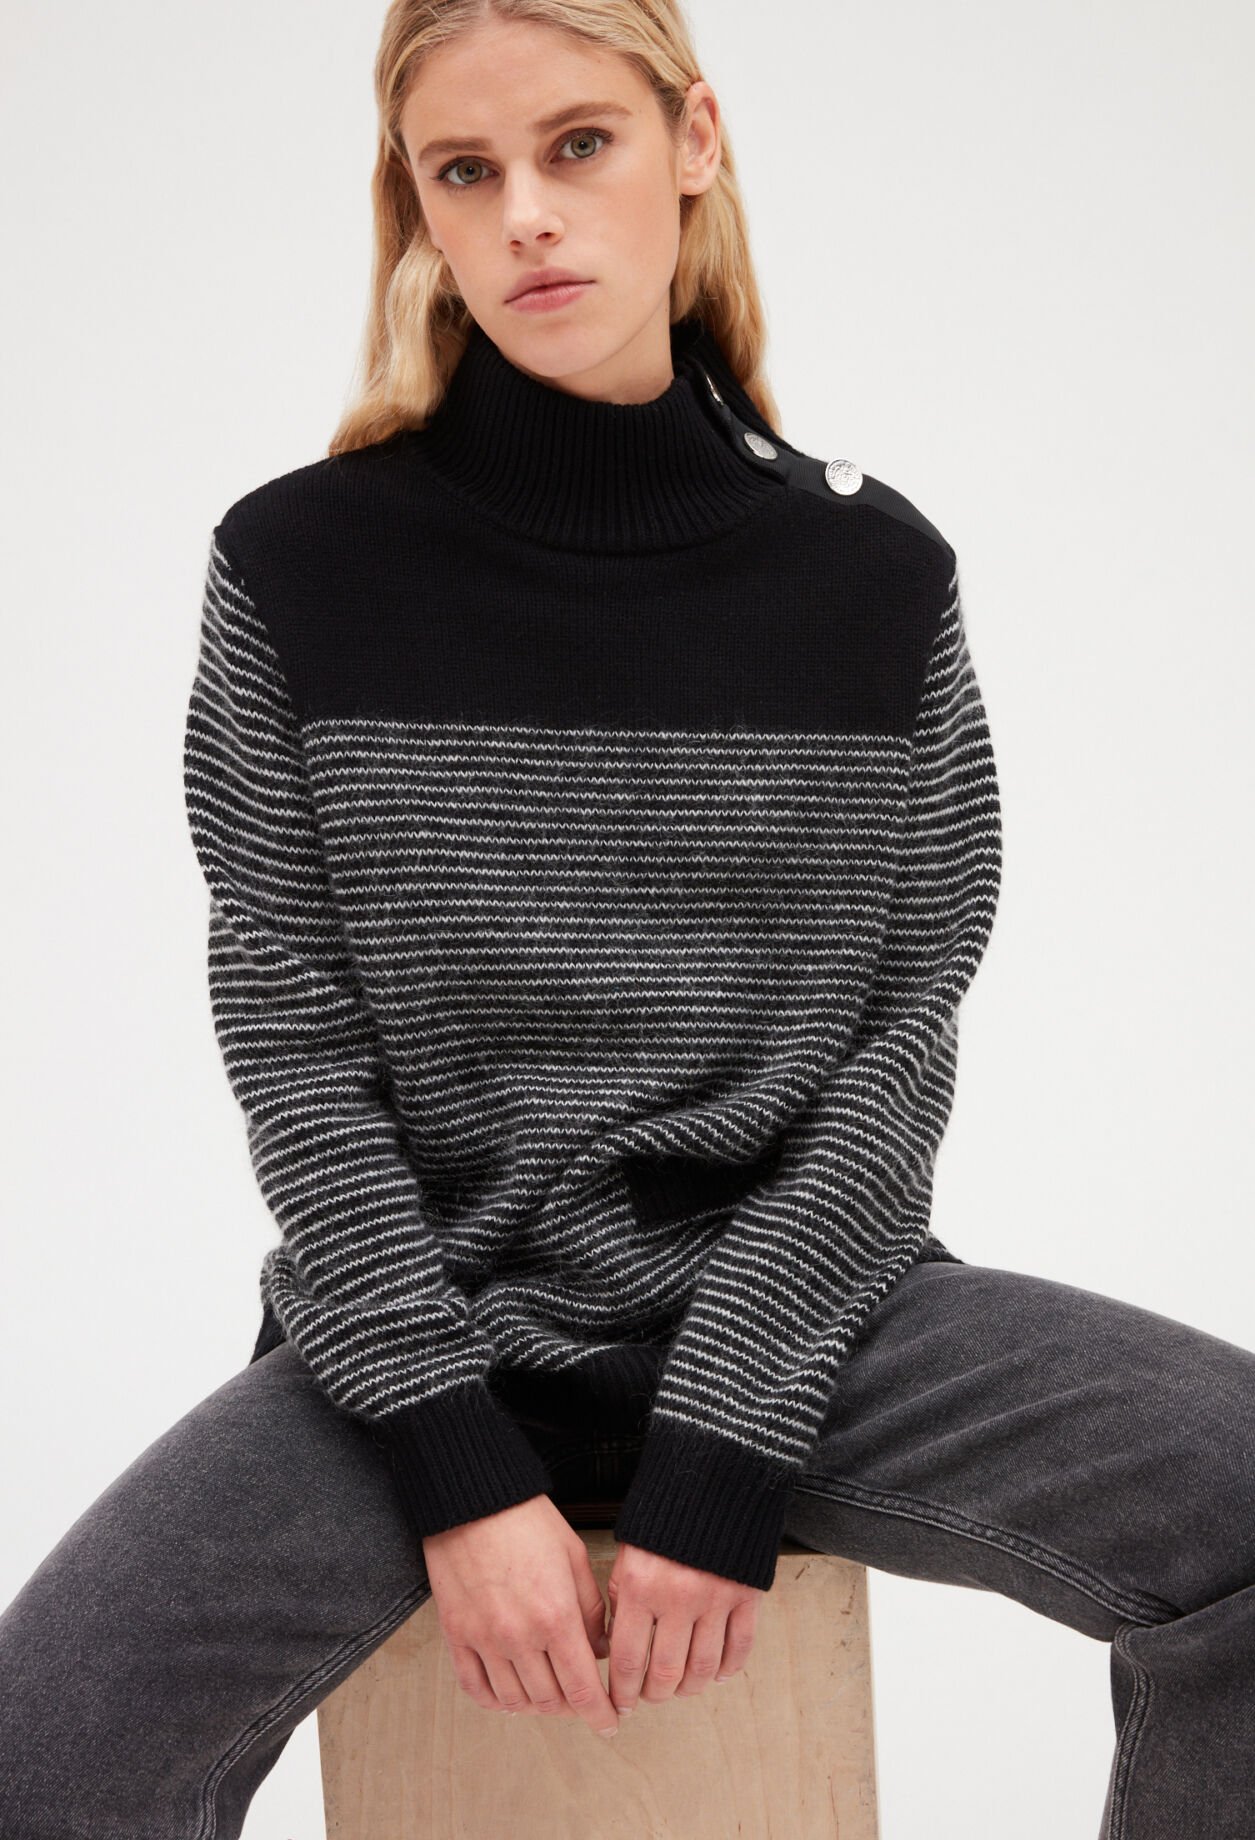 Striped jumper in knitwear